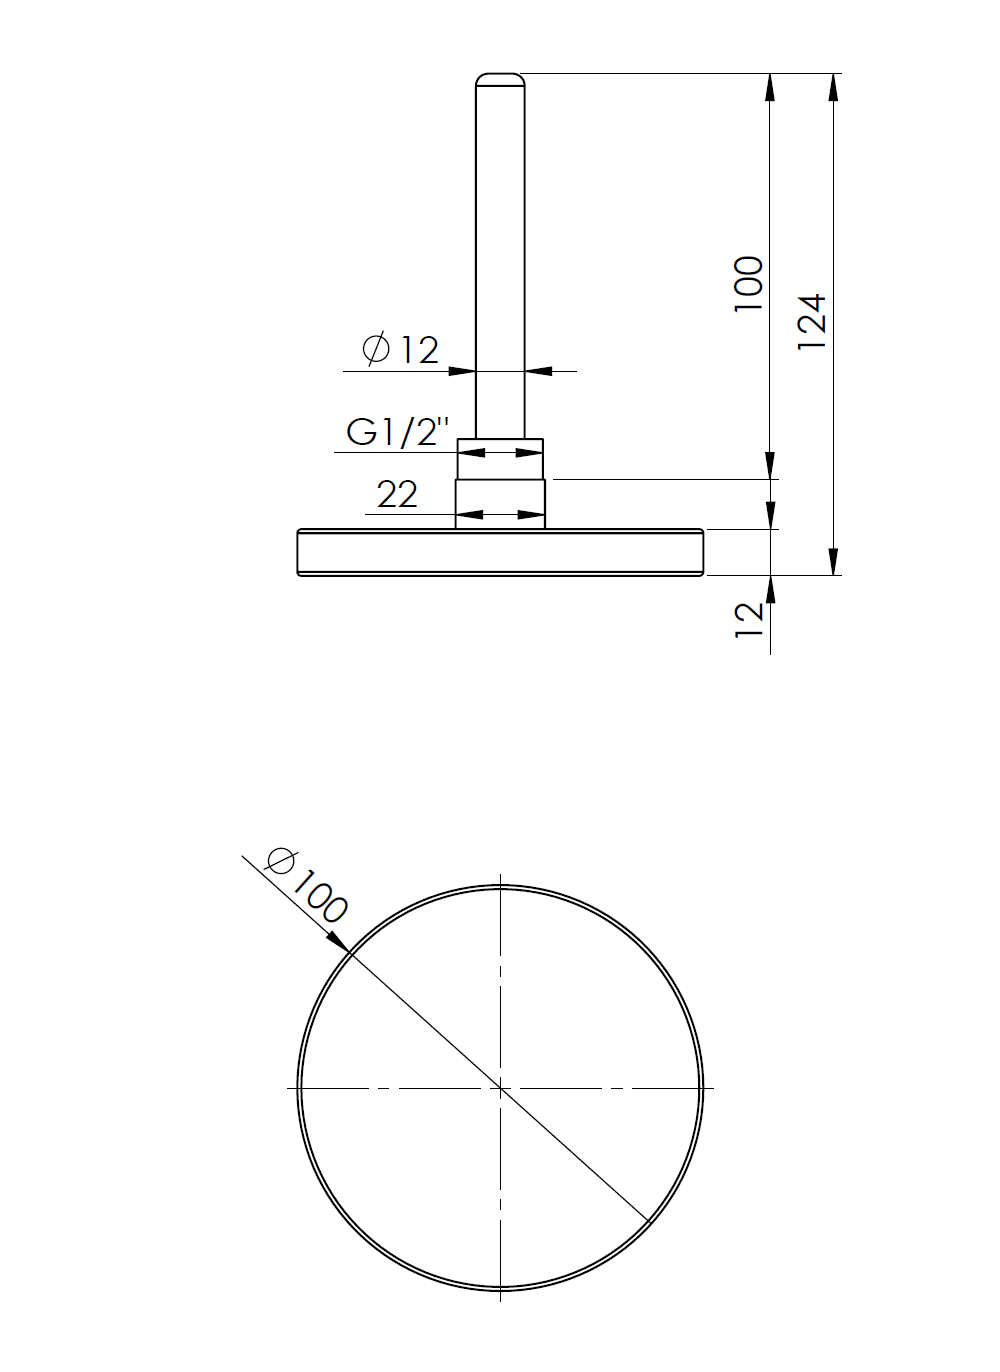 64017 Termometr bimetaliczny BiTh 100, fi100 mm, 0÷160°C, L 100 mm, G1/2", ax, kl. 2 - wymiary AFRISO 1